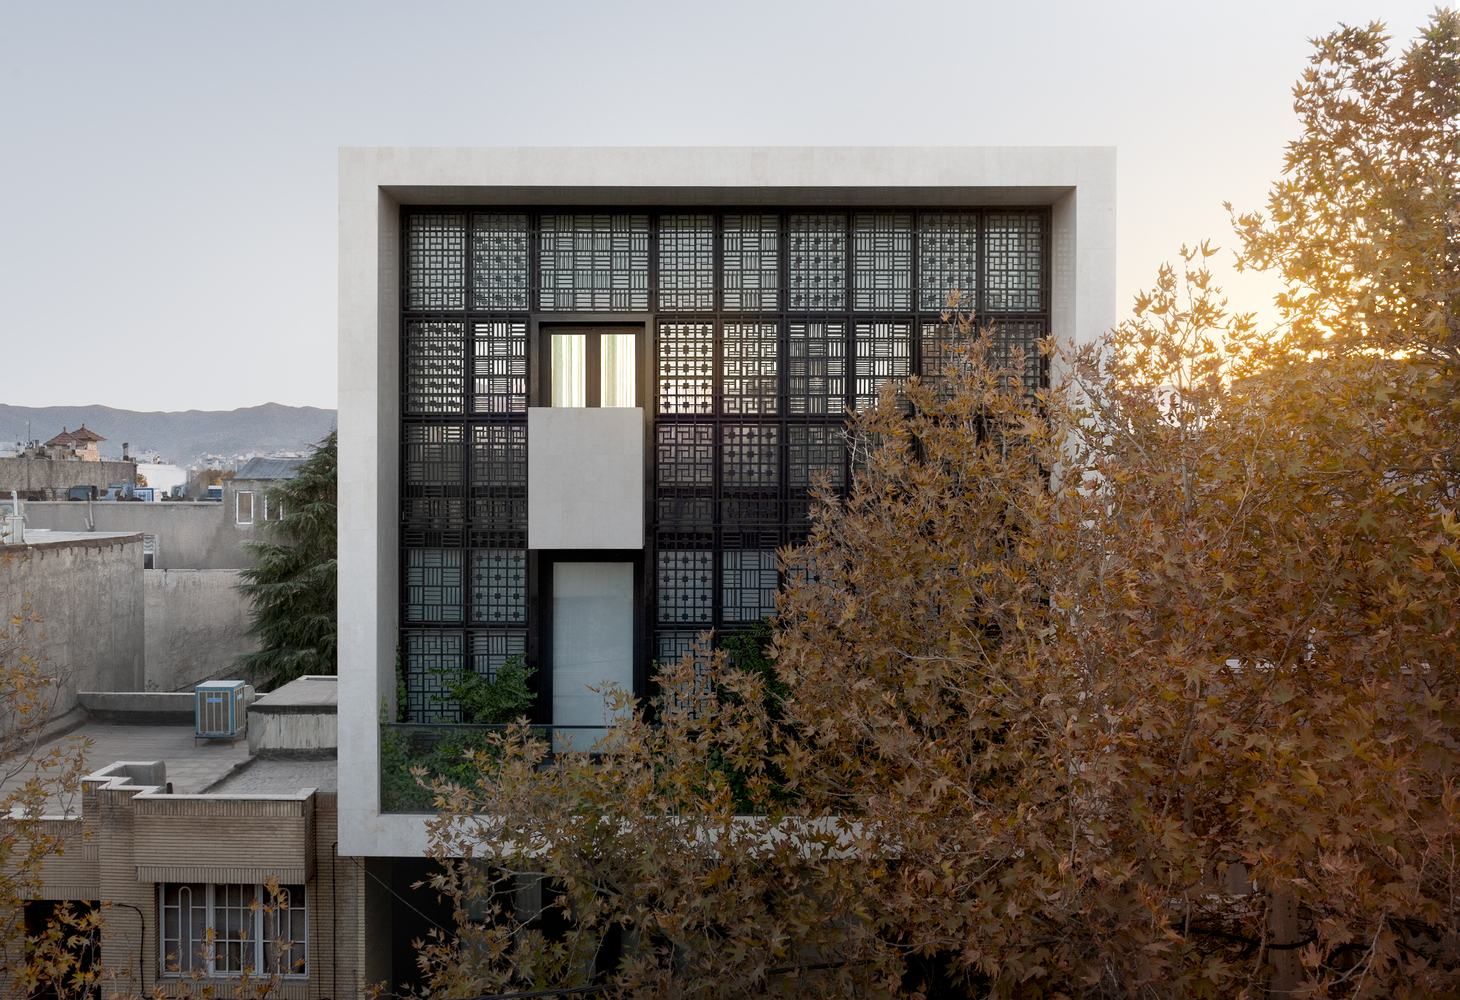 Будинок-вікно: в Ірані спроєктували неймовірні апартаменти